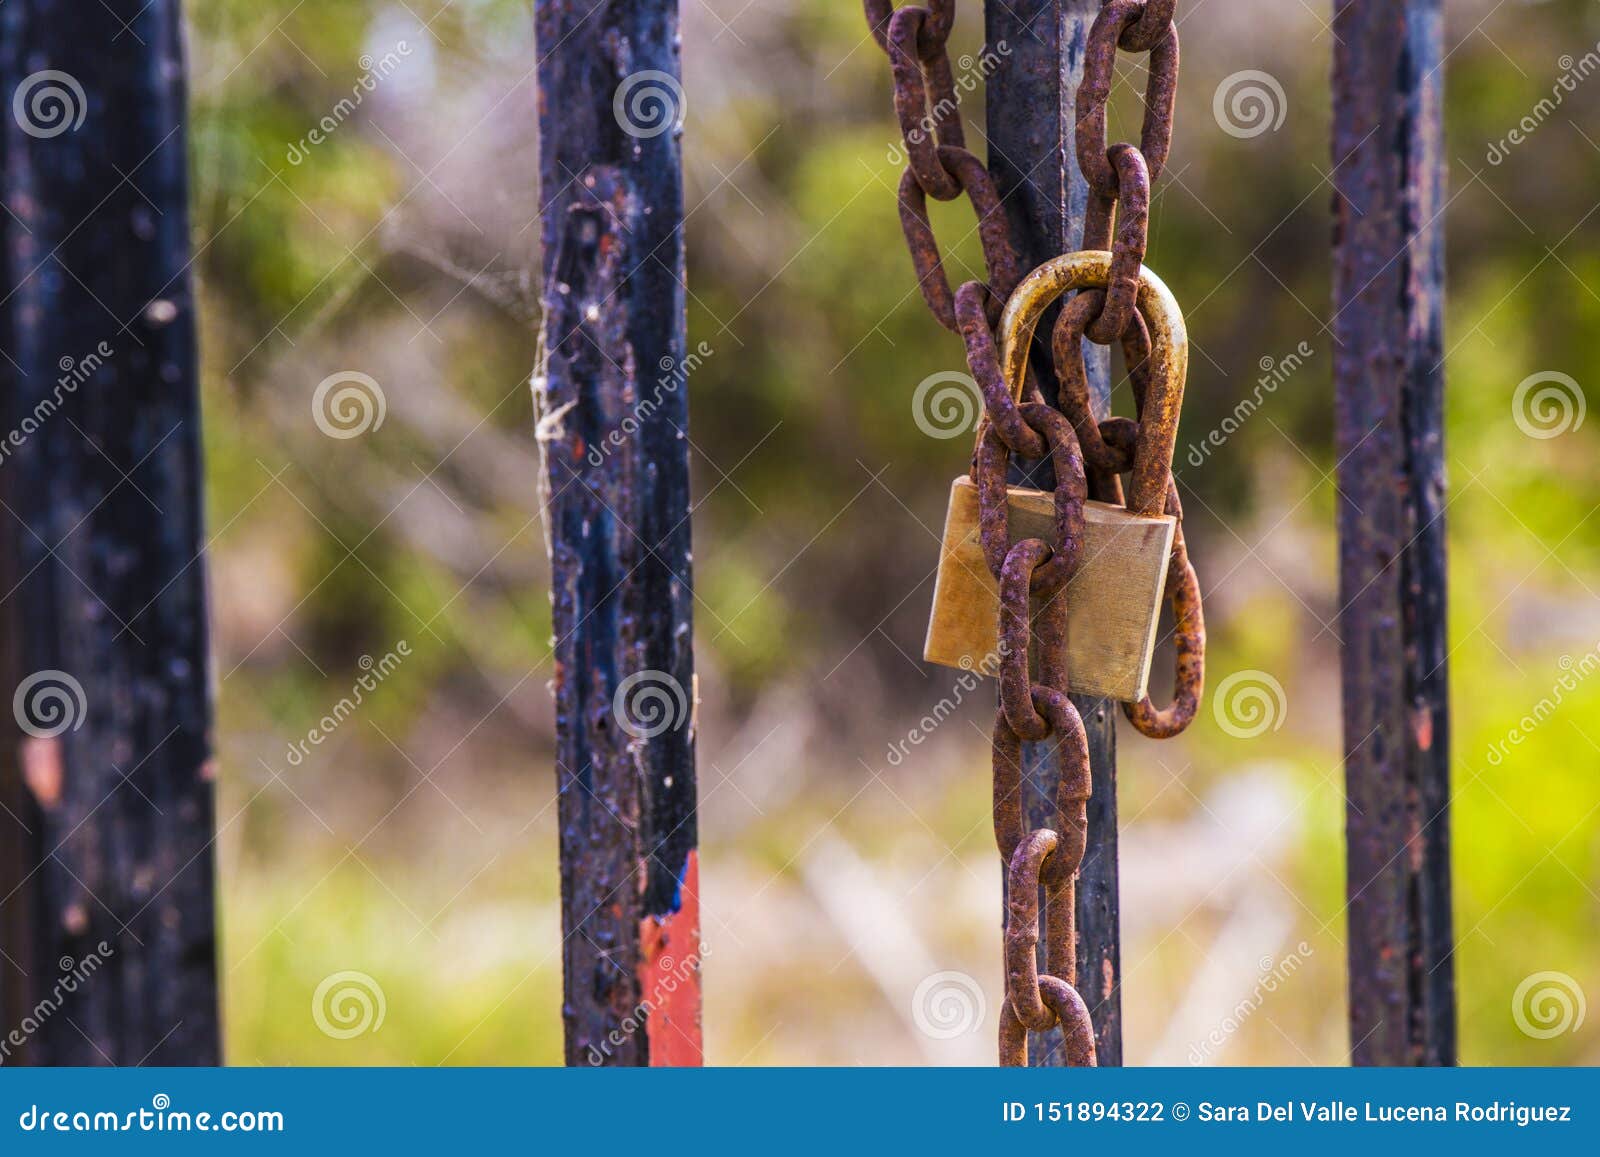 rusty padlock closing the gate